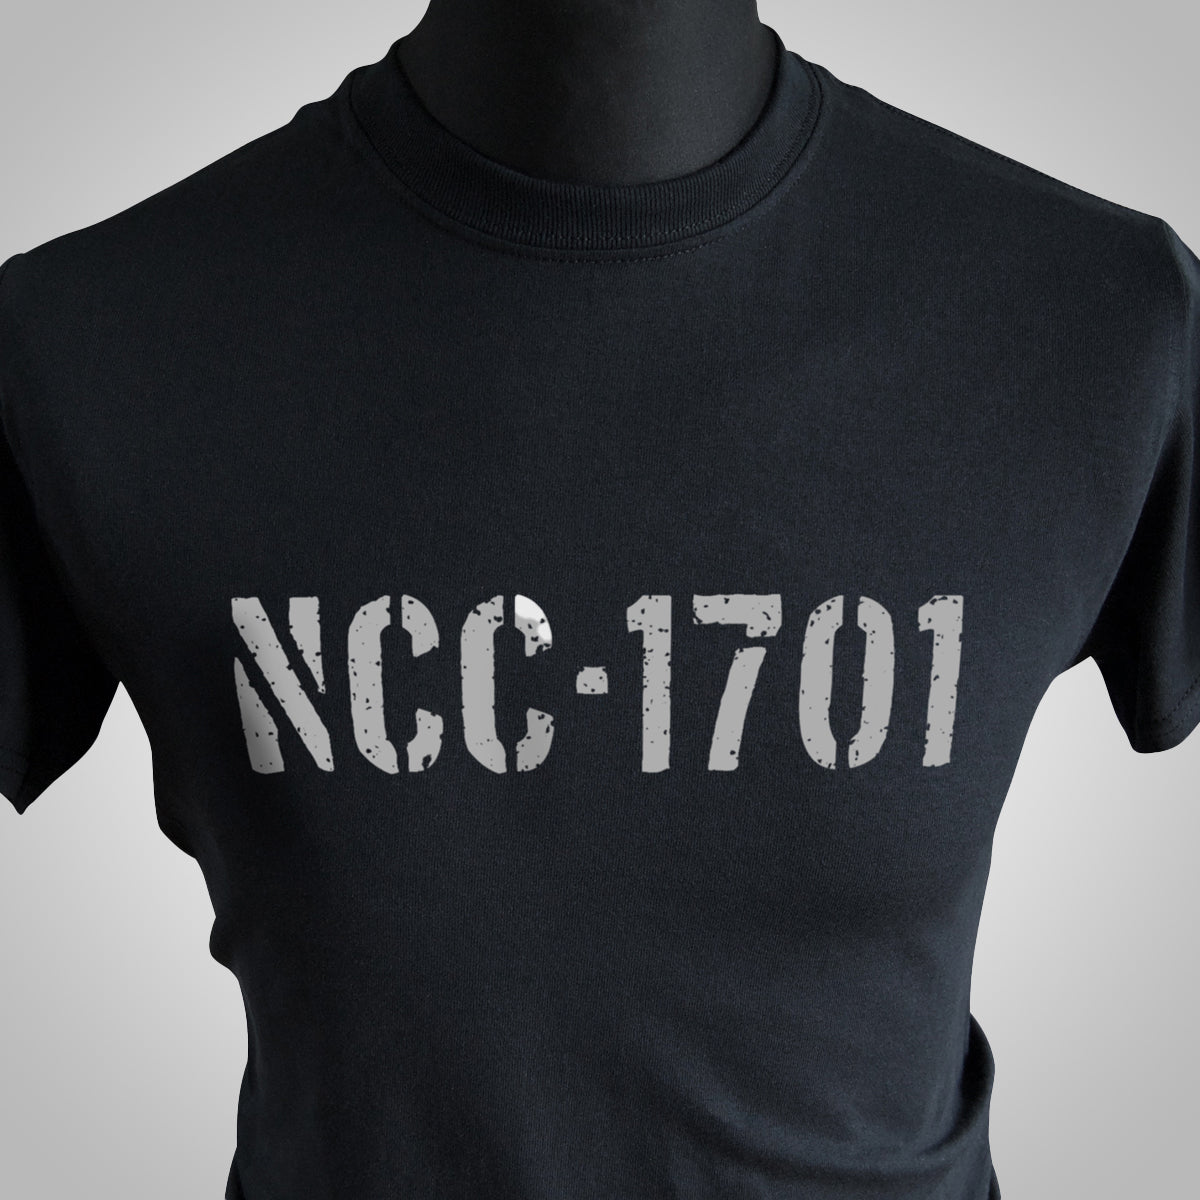 NCC-1701 T Shirt (Colour Options)